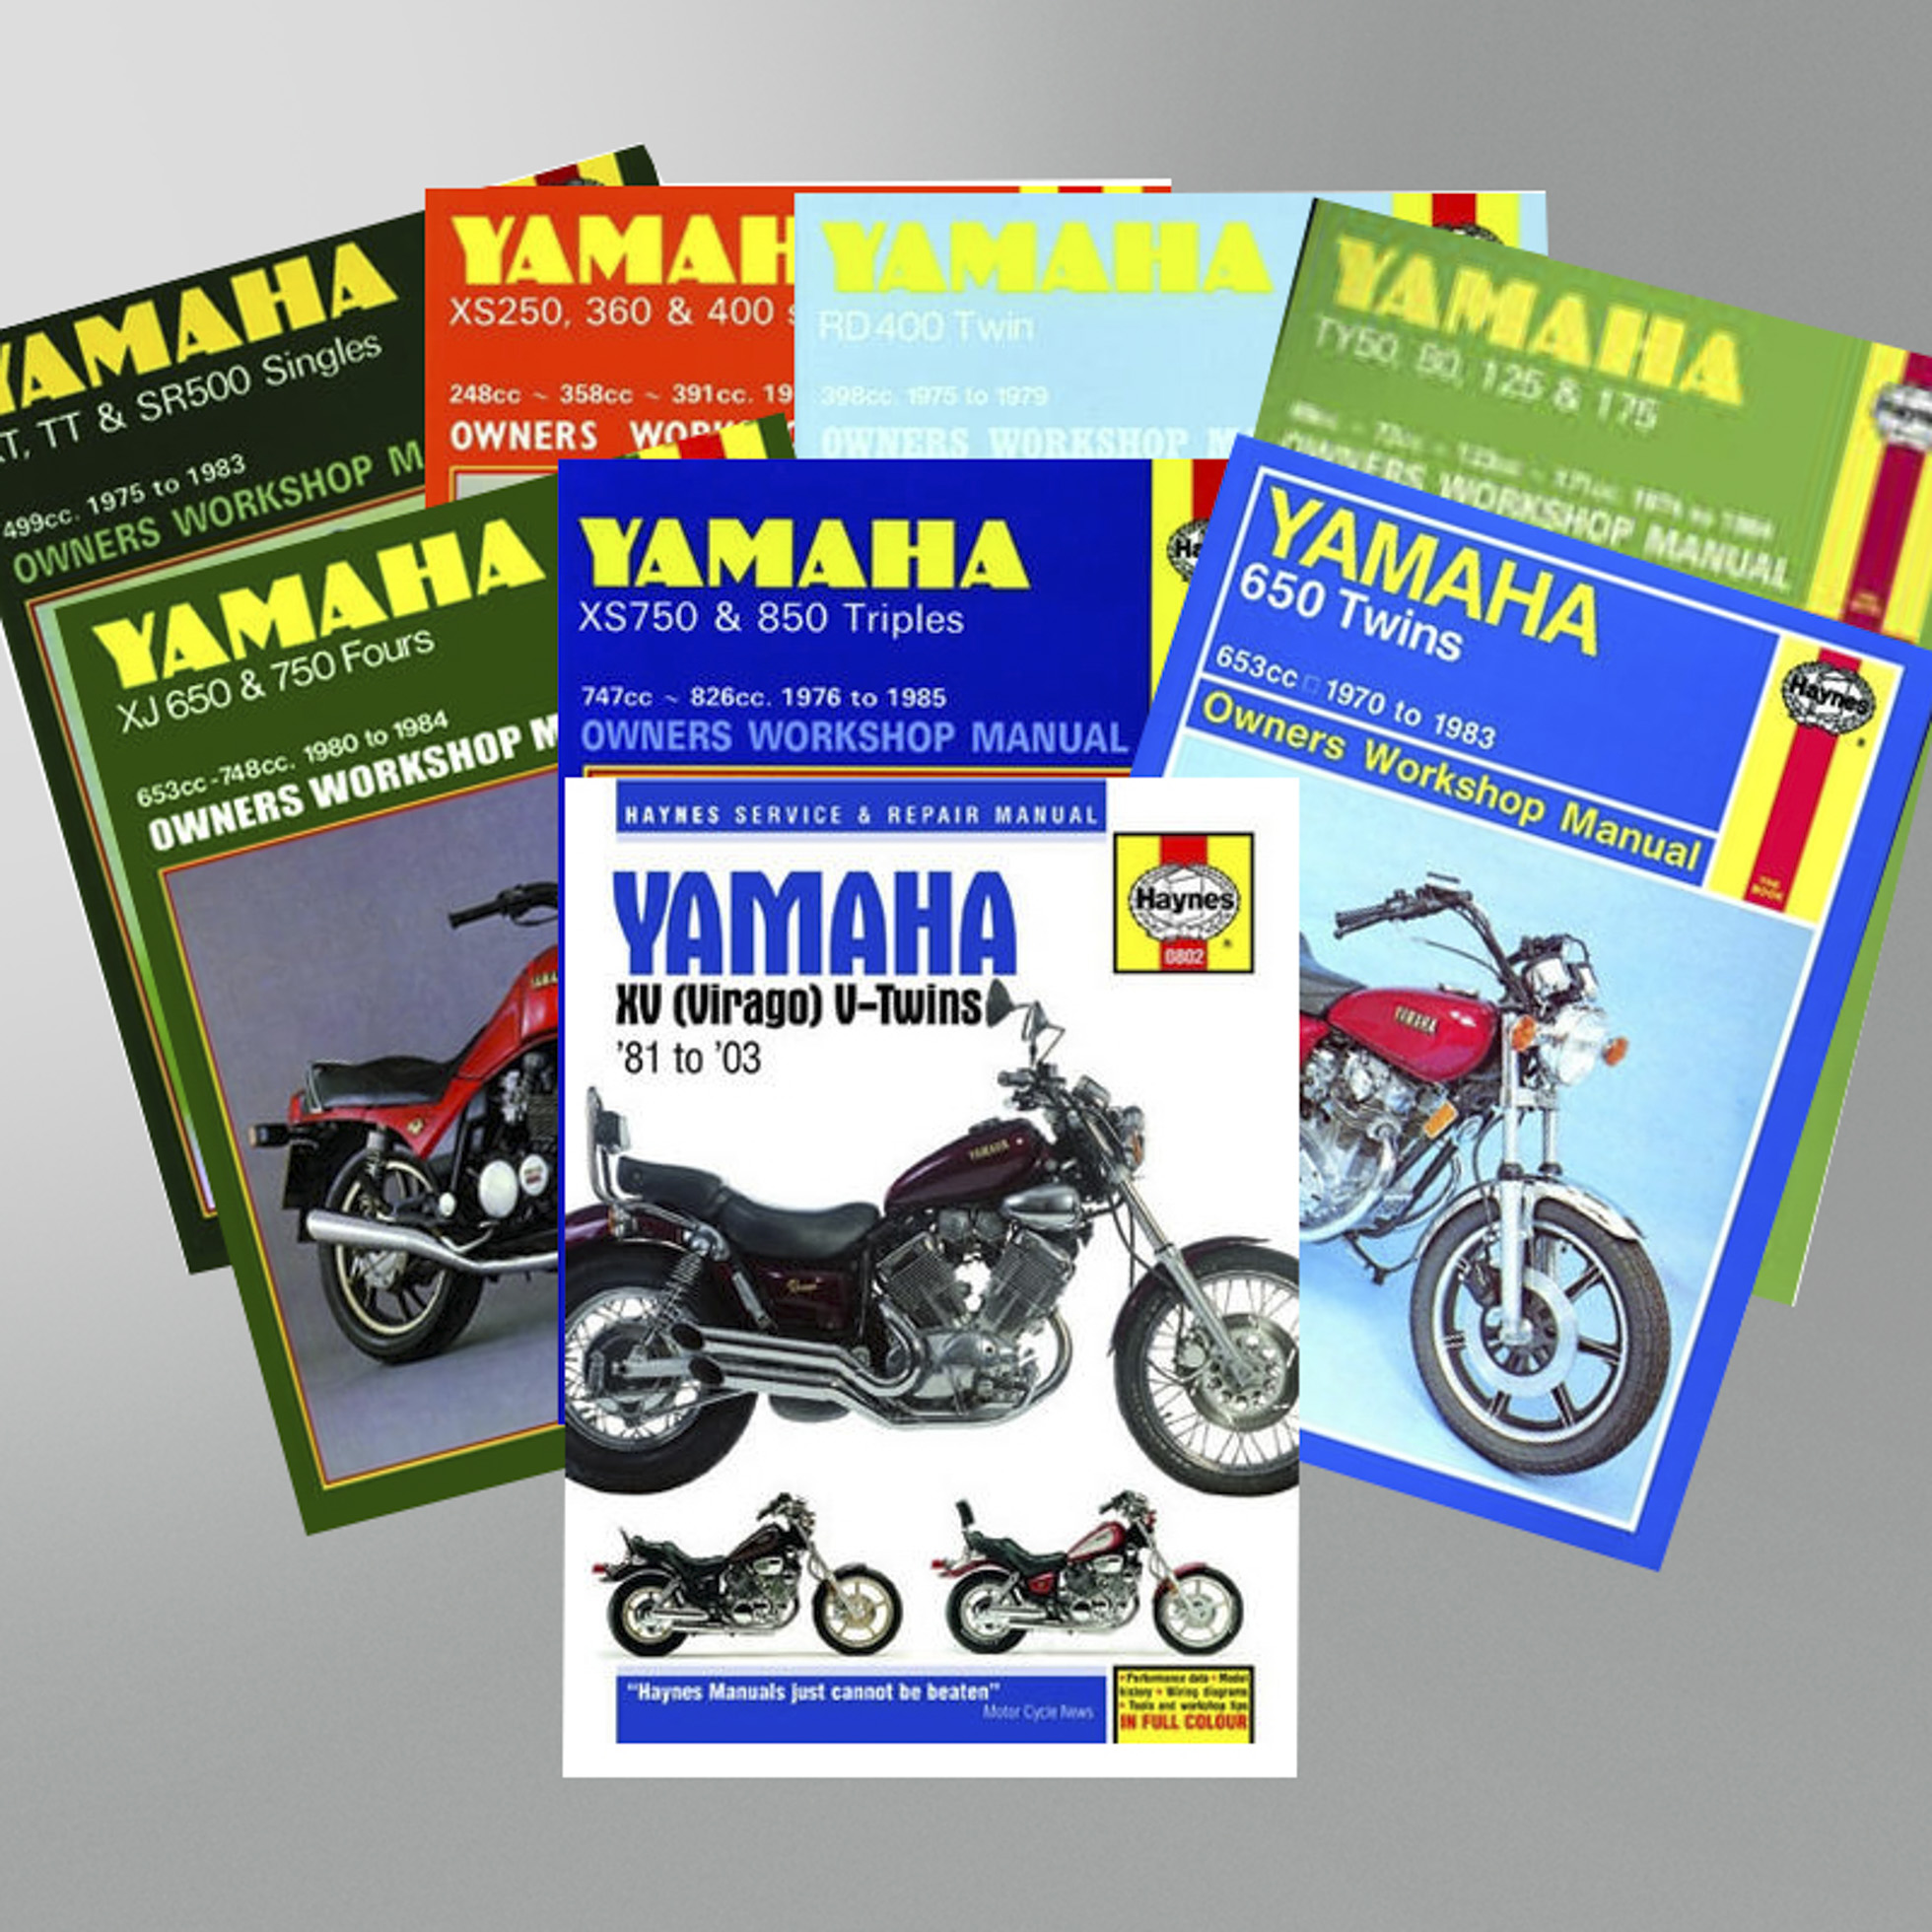 Haynes Yamaha Repair Manual Yamaha - Buy now, get 12% off - 24mx.com